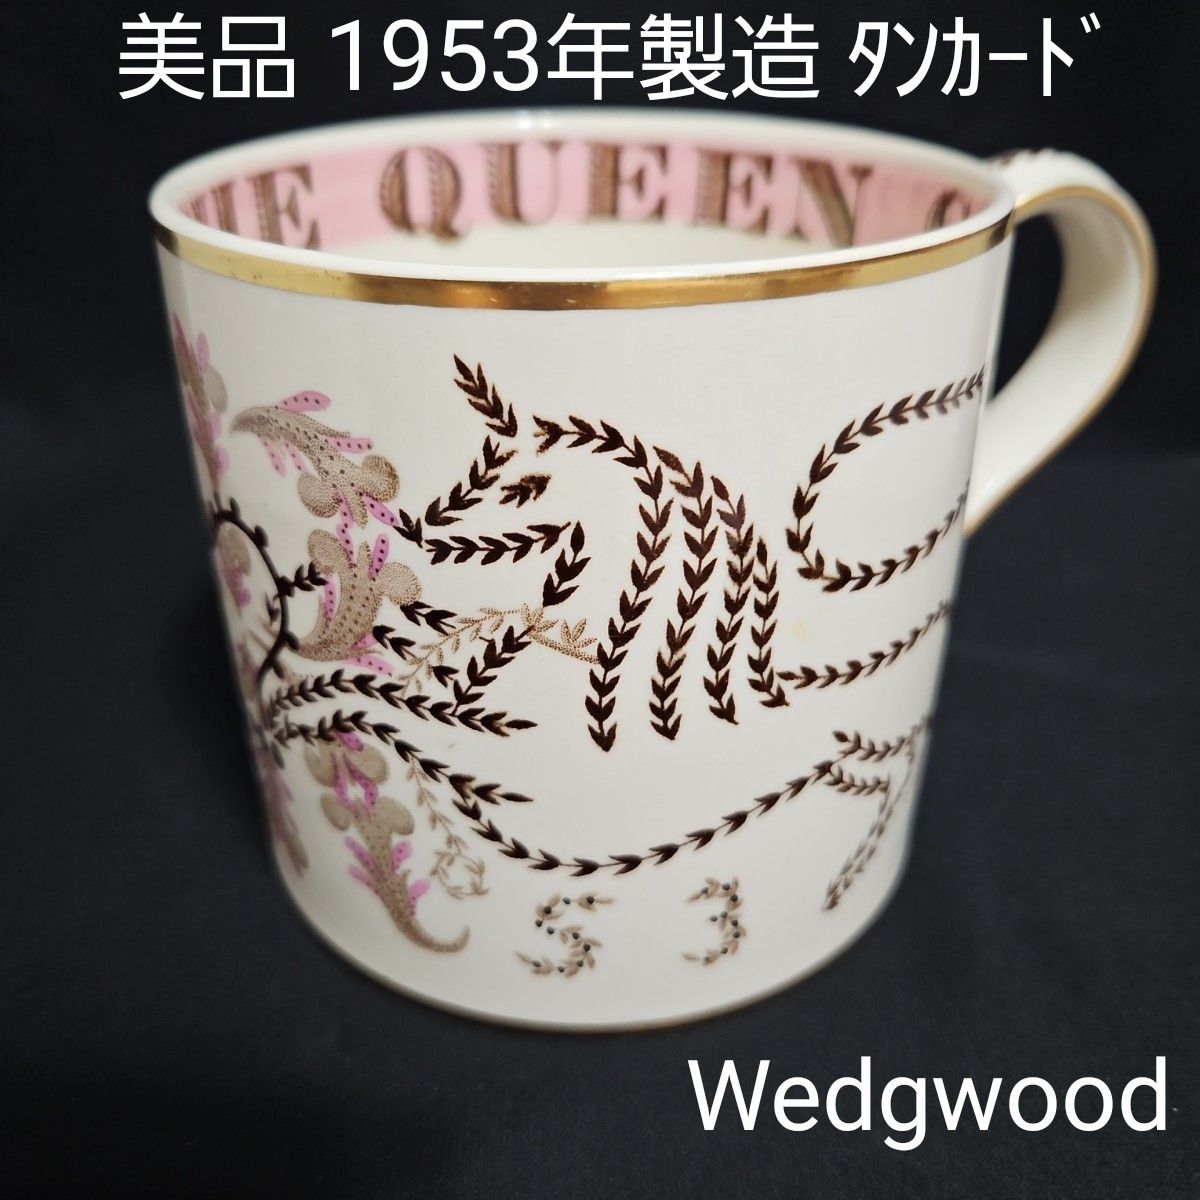 美品 Wedgwood 1953年製造 エリザベス女王 戴冠式記念 タンカード コロネーション ラージサイズ マグカップ